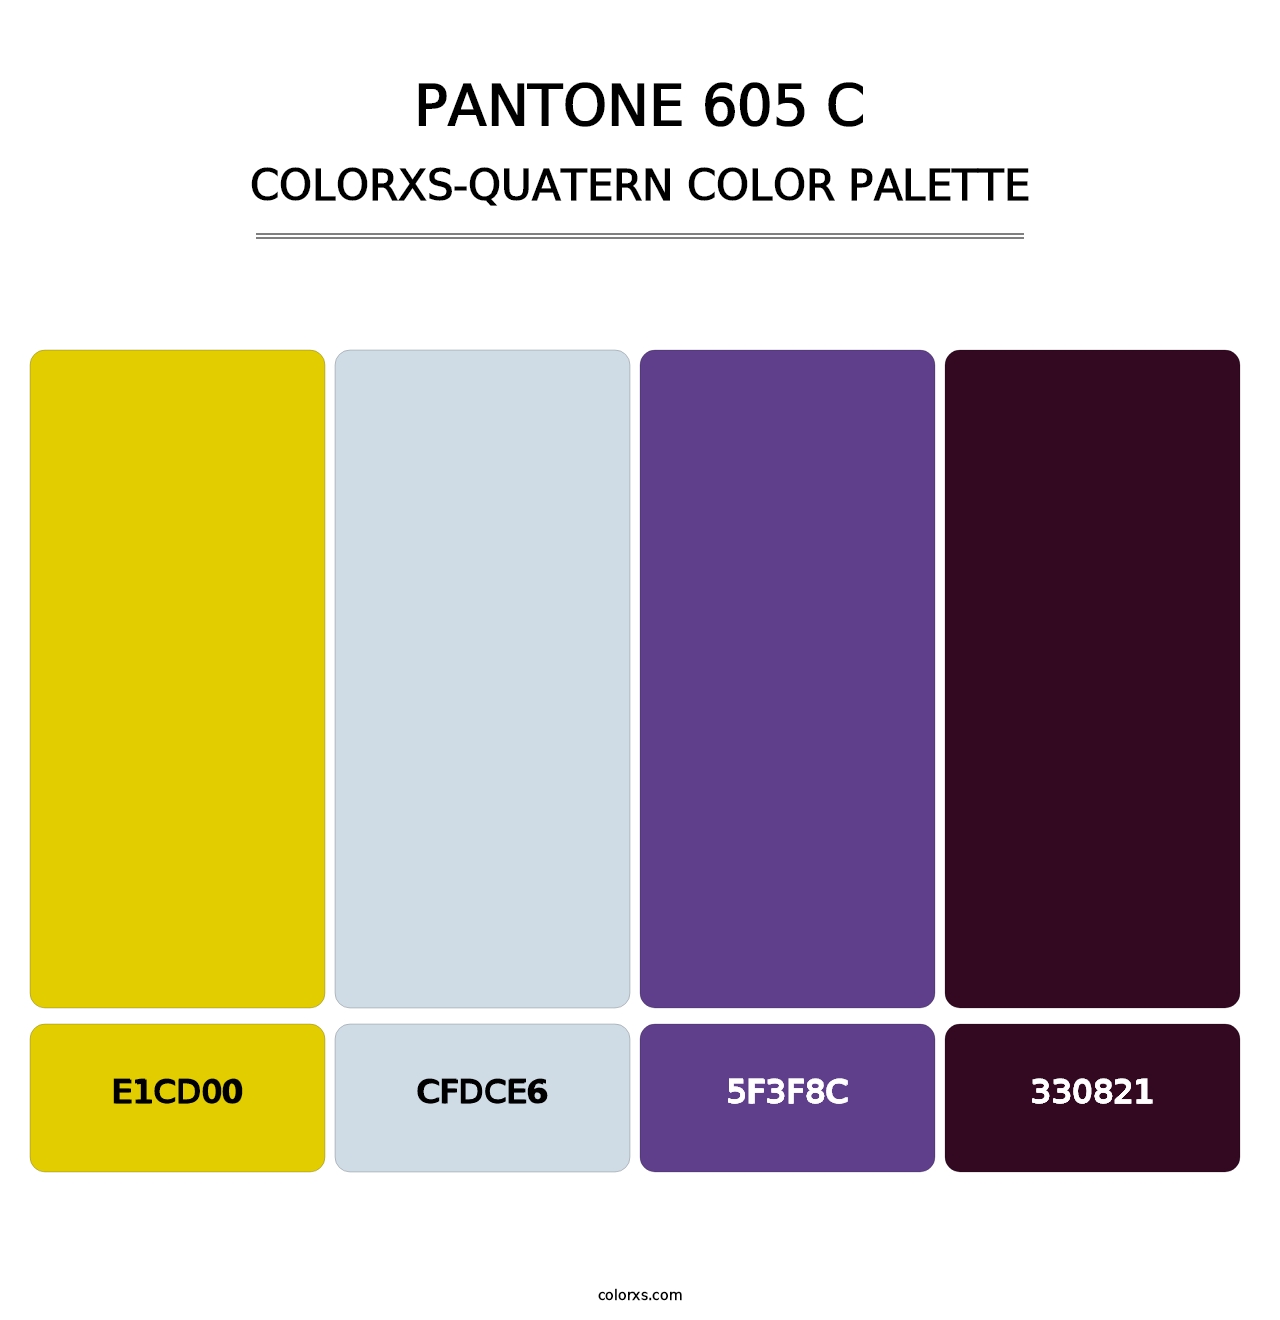 PANTONE 605 C - Colorxs Quatern Palette